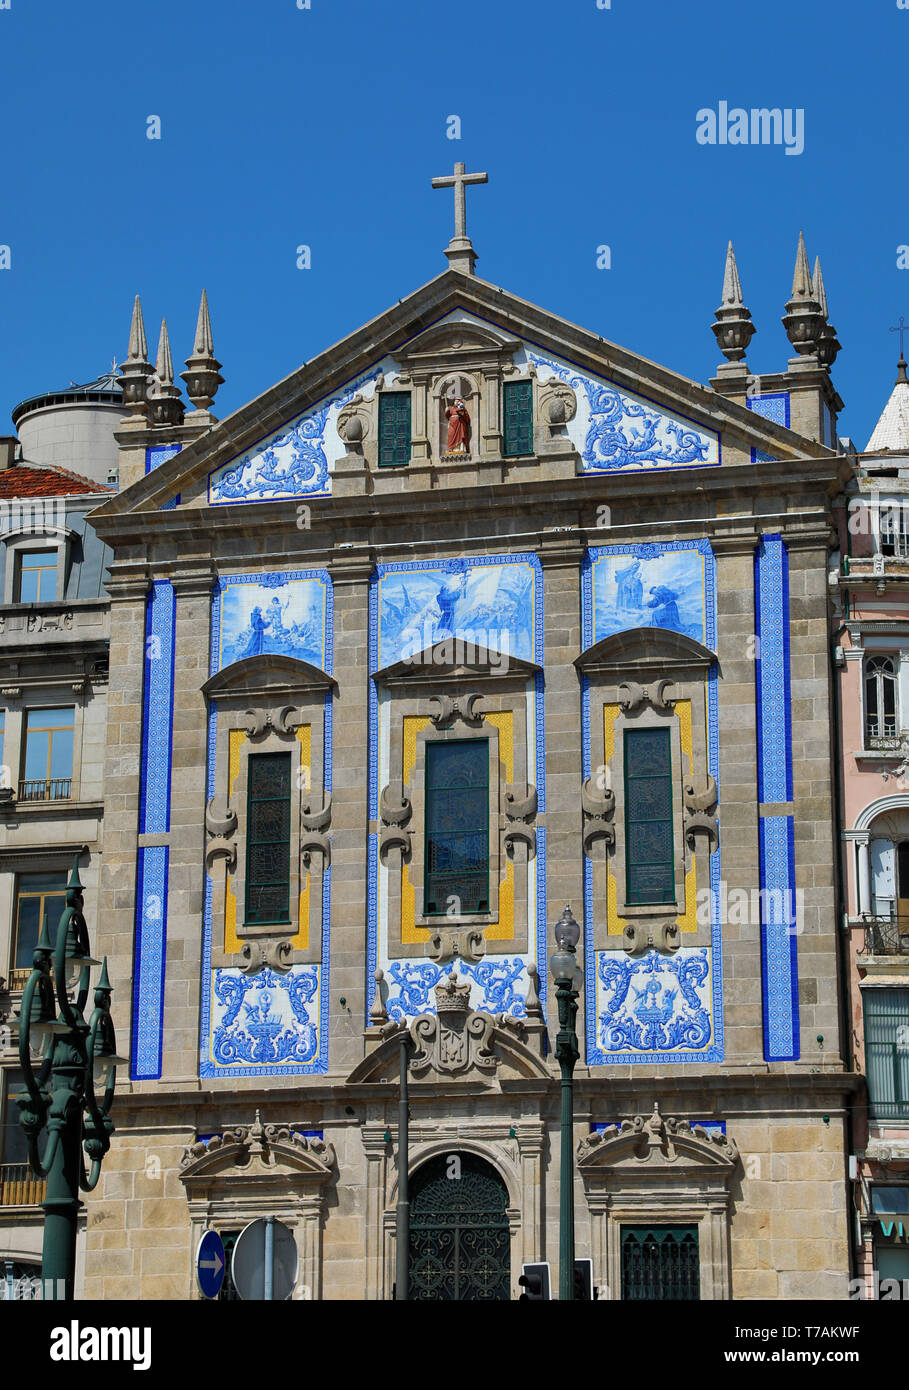 Carreaux bleu façade de l'église Saint-Antoine de Congregados, Porto, Portugal Banque D'Images